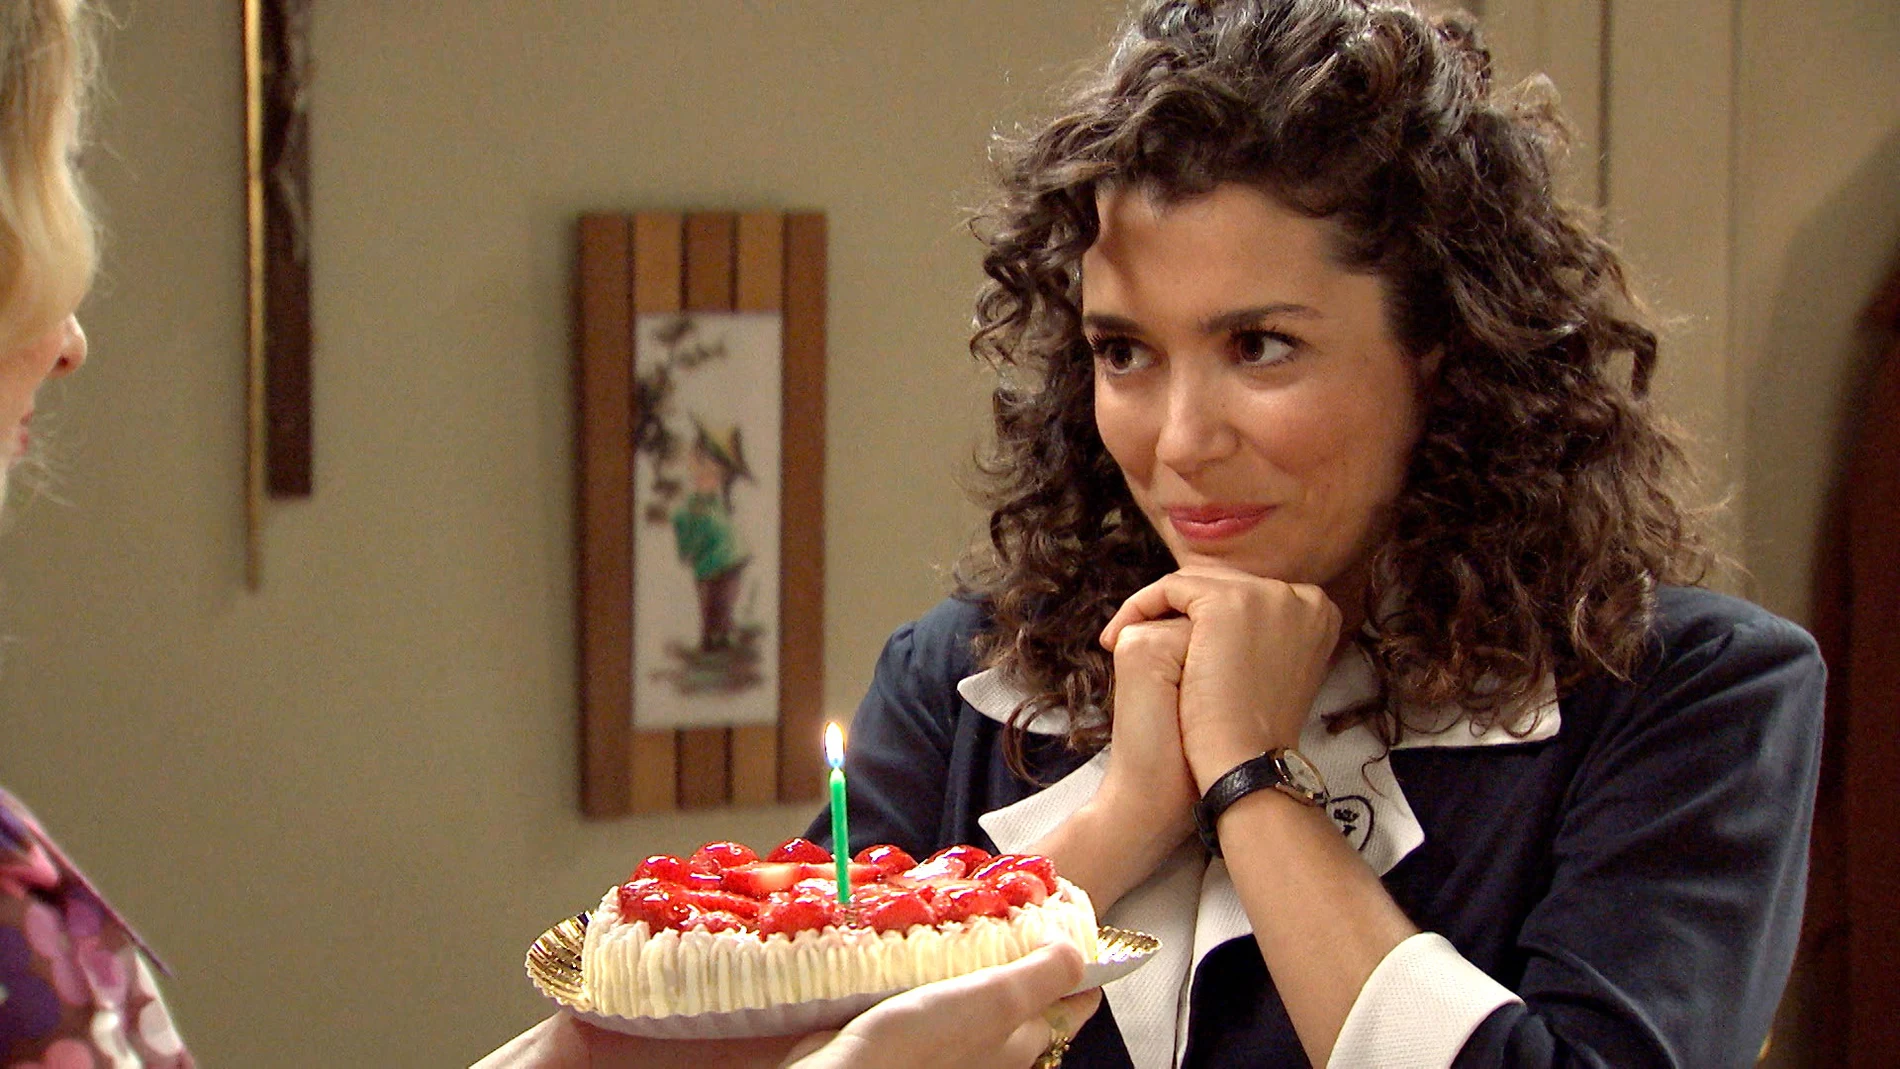 Luisita le prepara una romántica sorpresa a Amelia por su cumpleaños